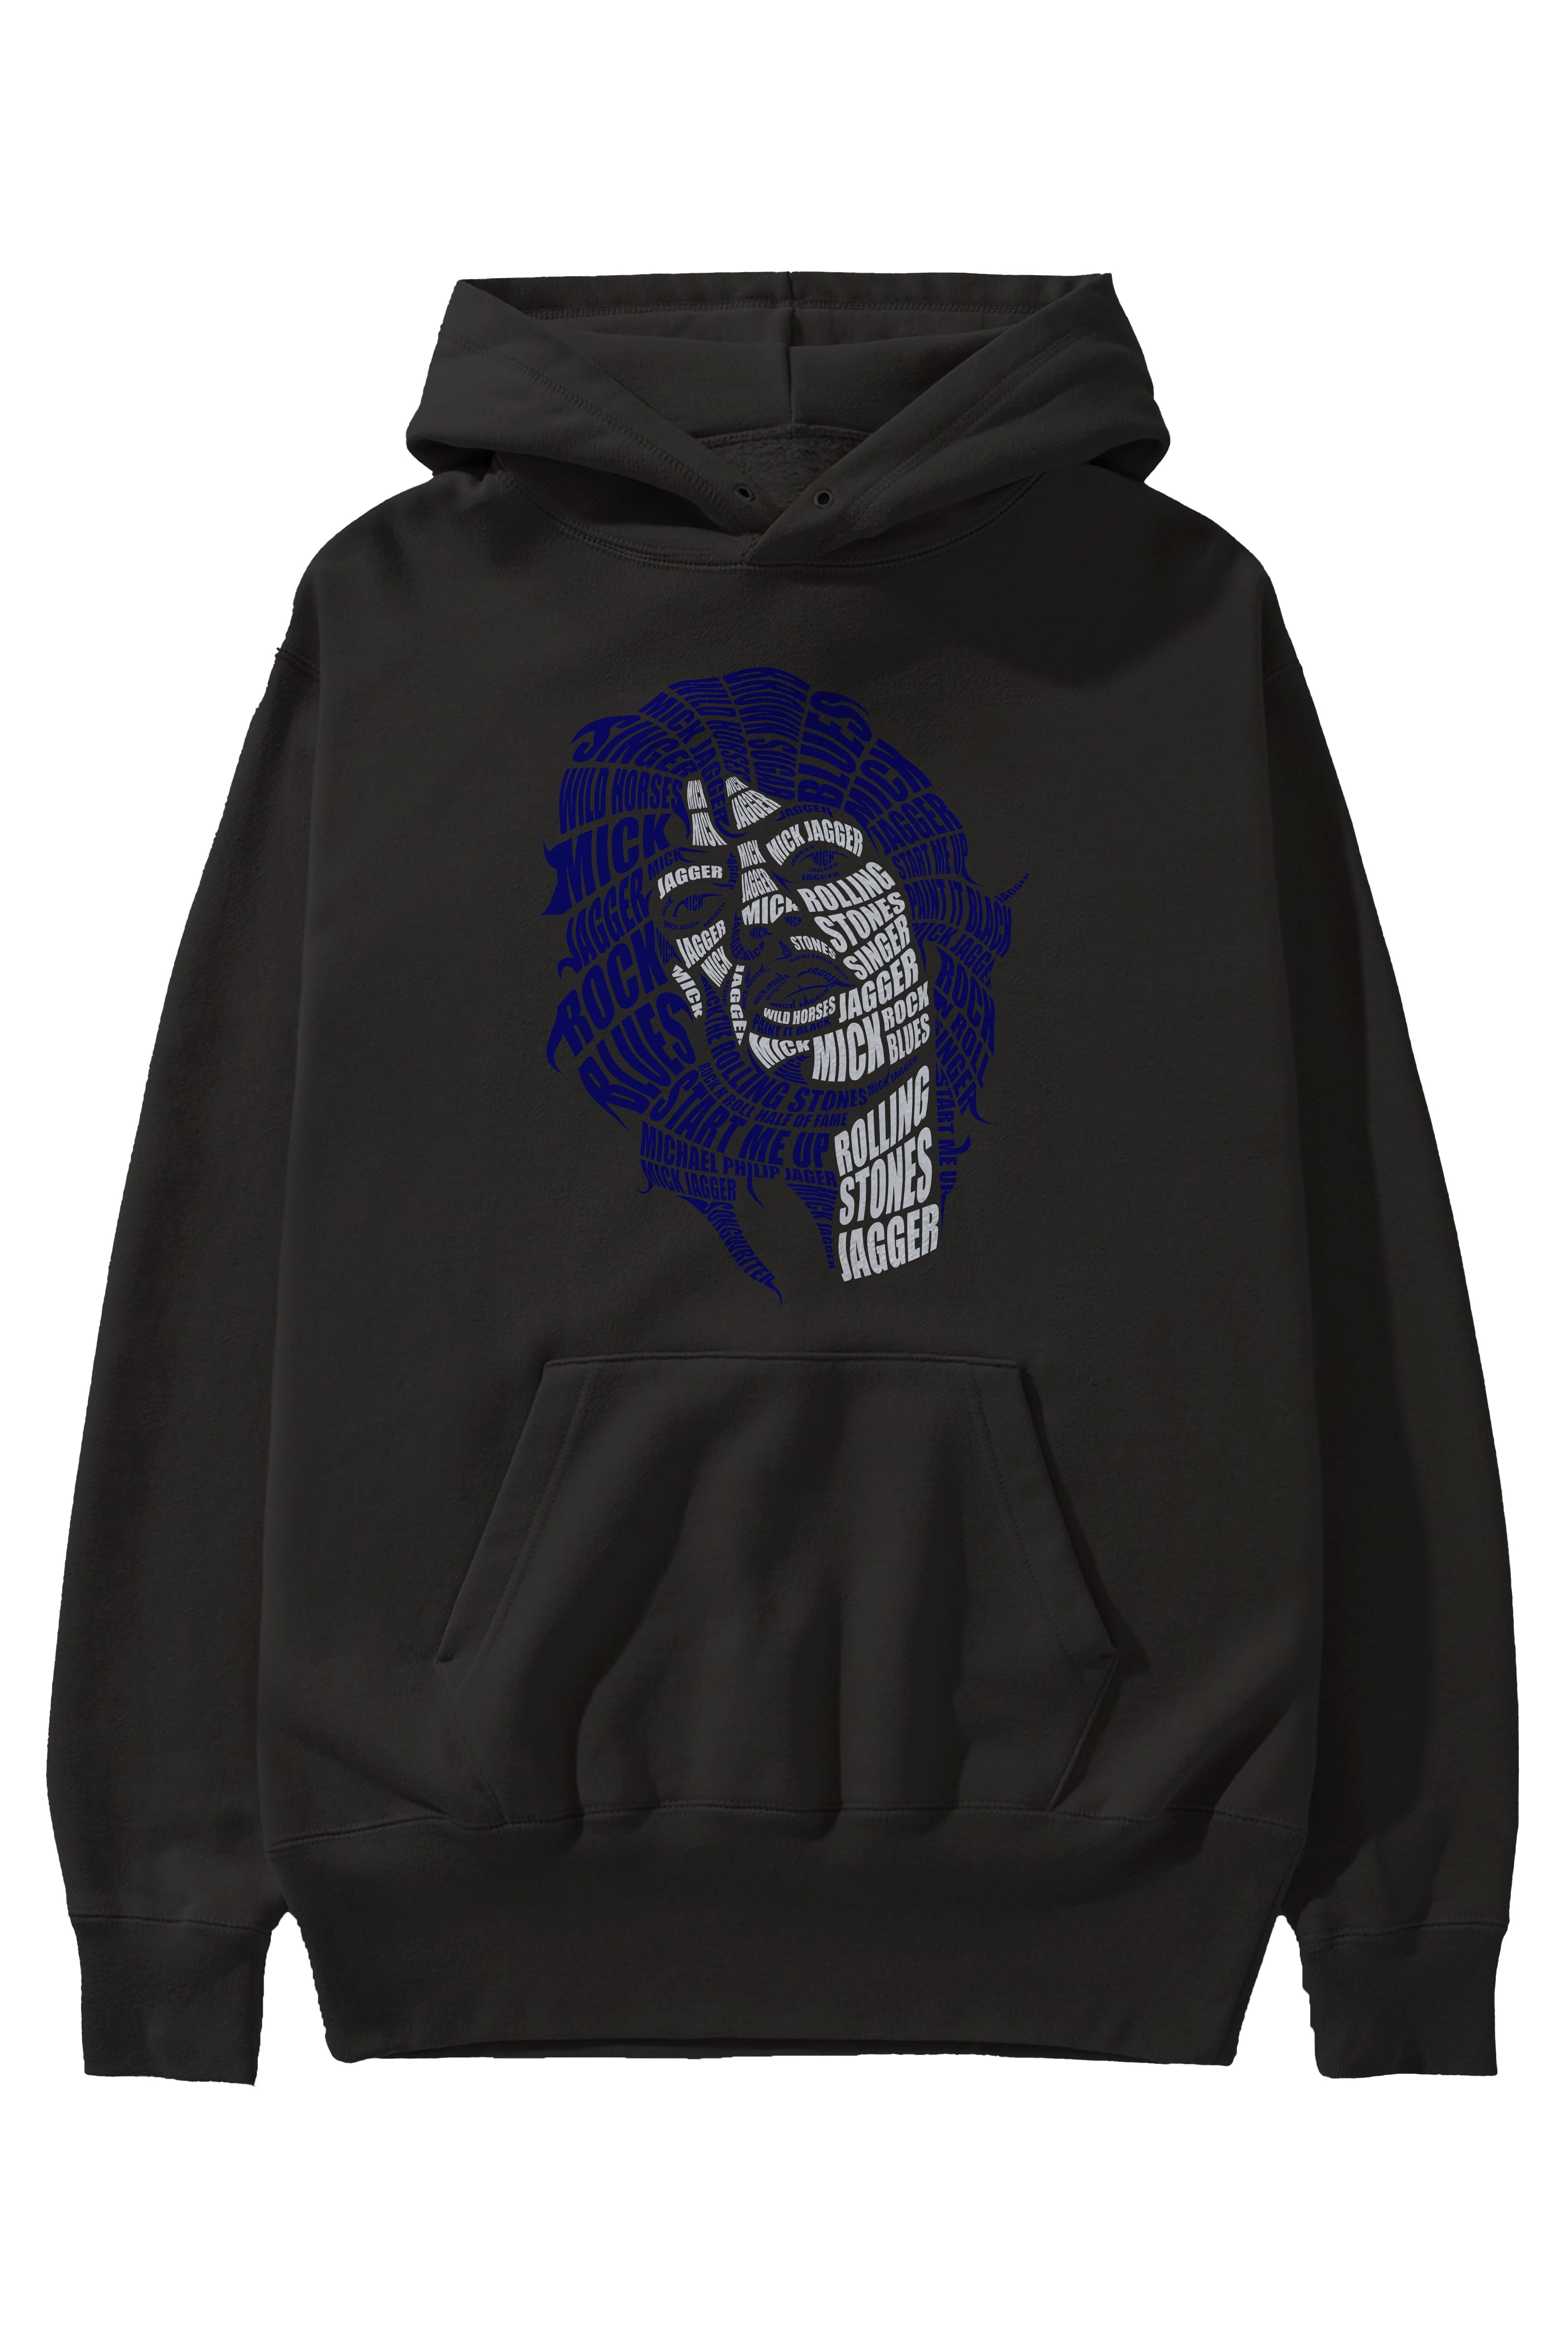 Mick Jagger Calligram Ön Baskılı Hoodie Oversize Kapüşonlu Sweatshirt Erkek Kadın Unisex